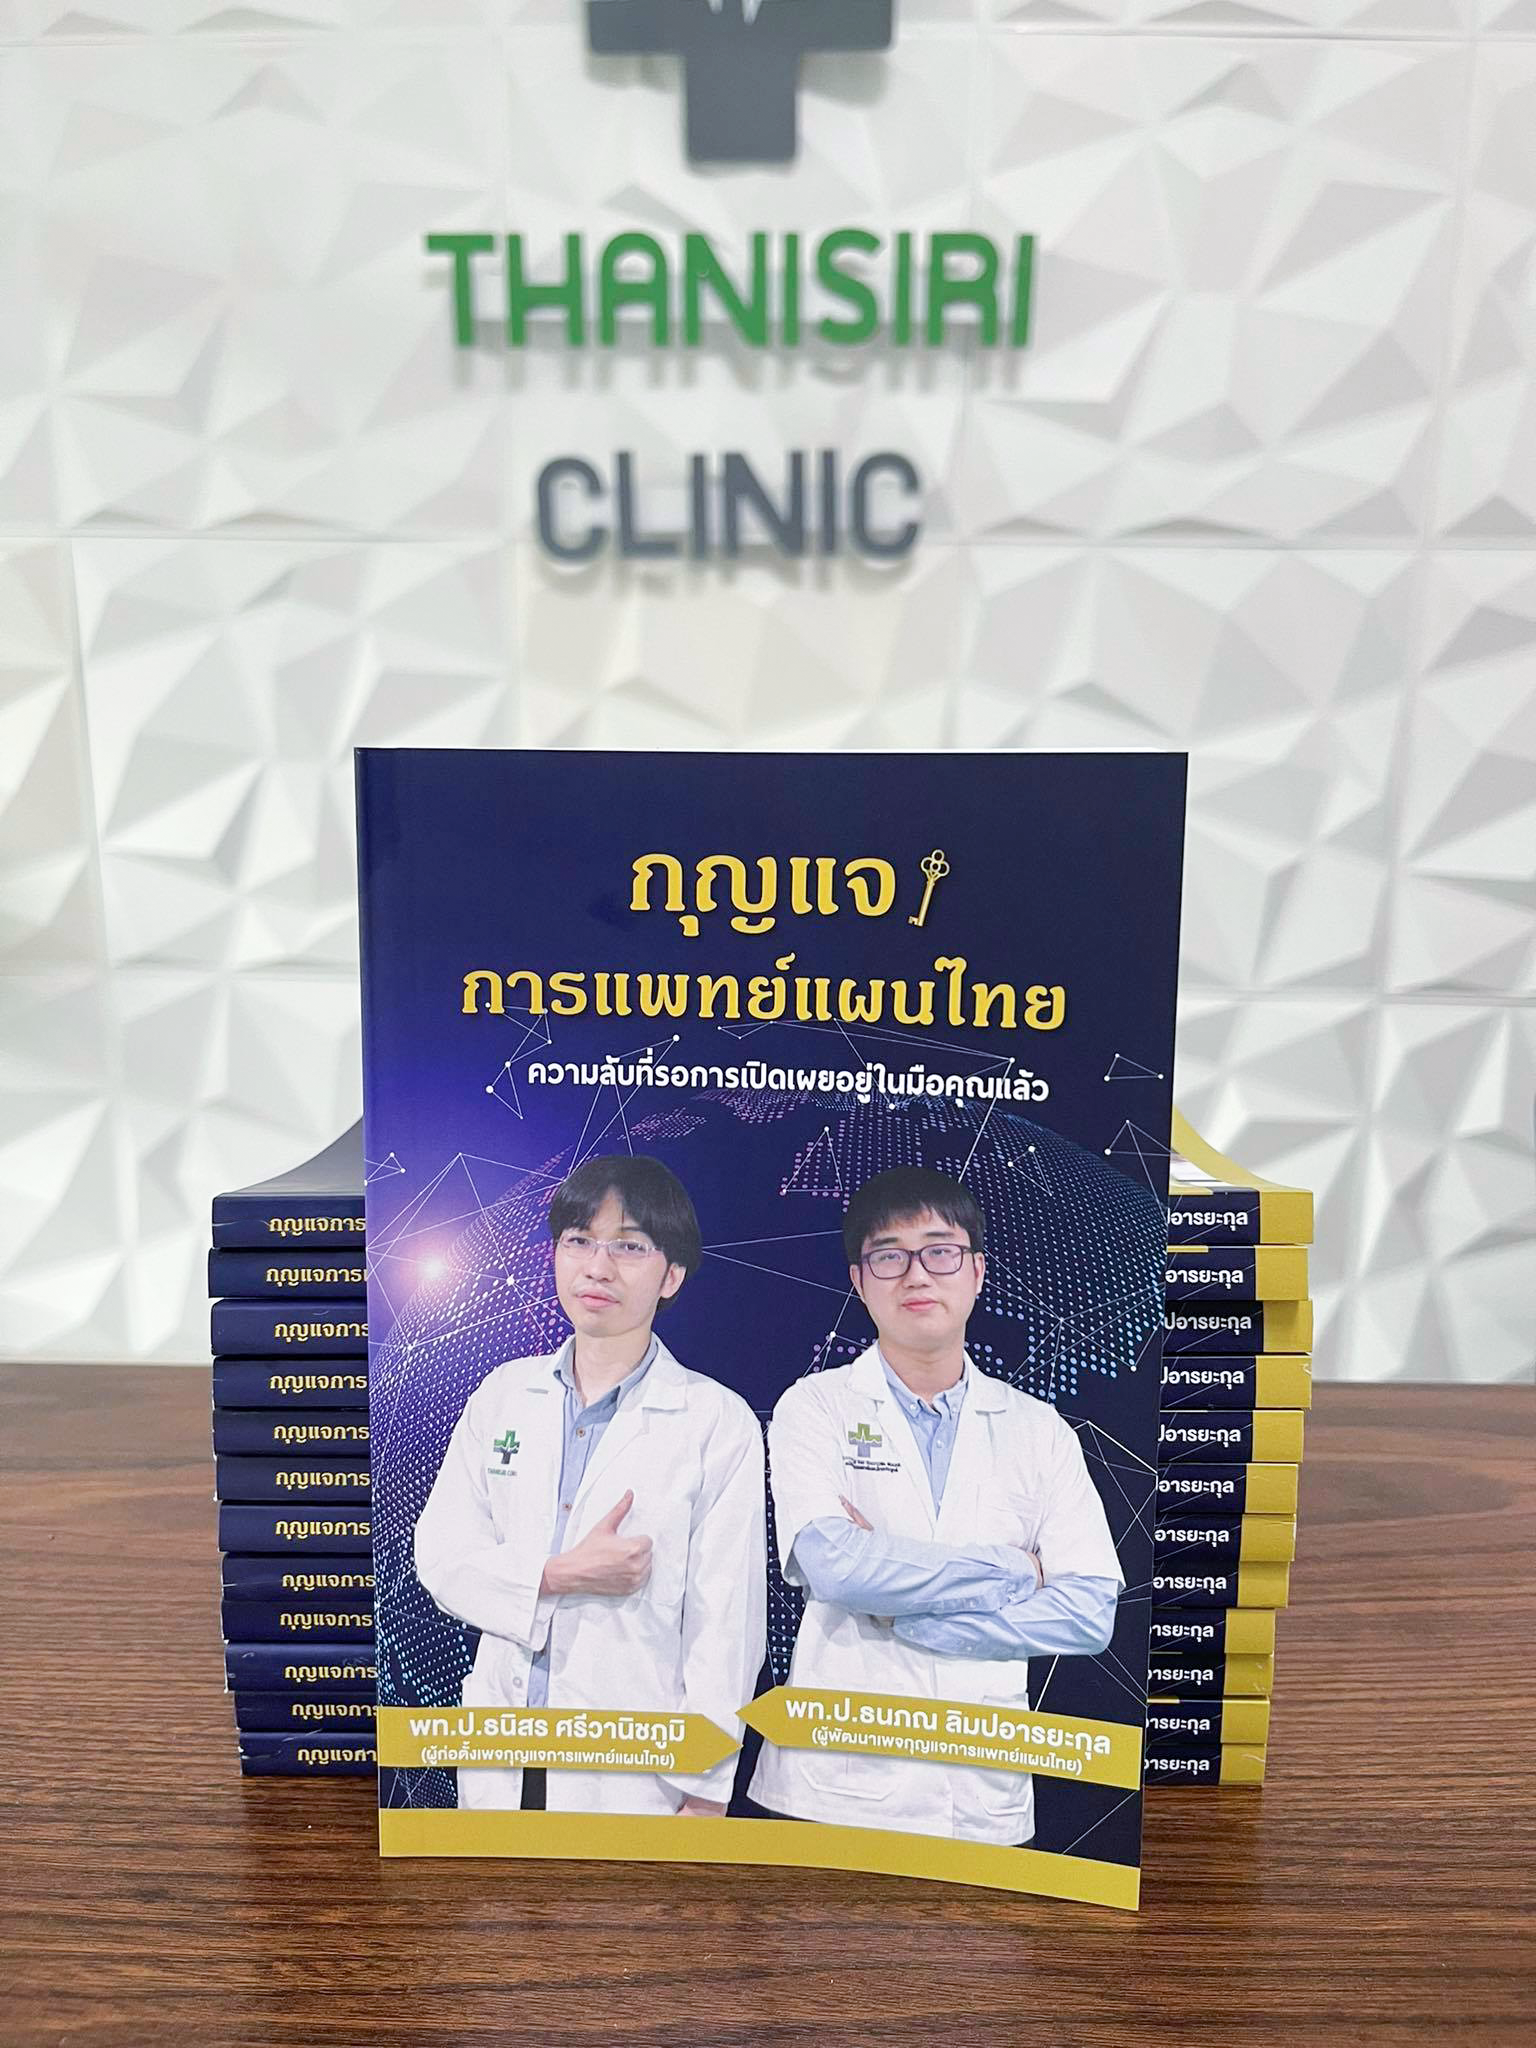 กุญแจการแพทย์แผนไทย